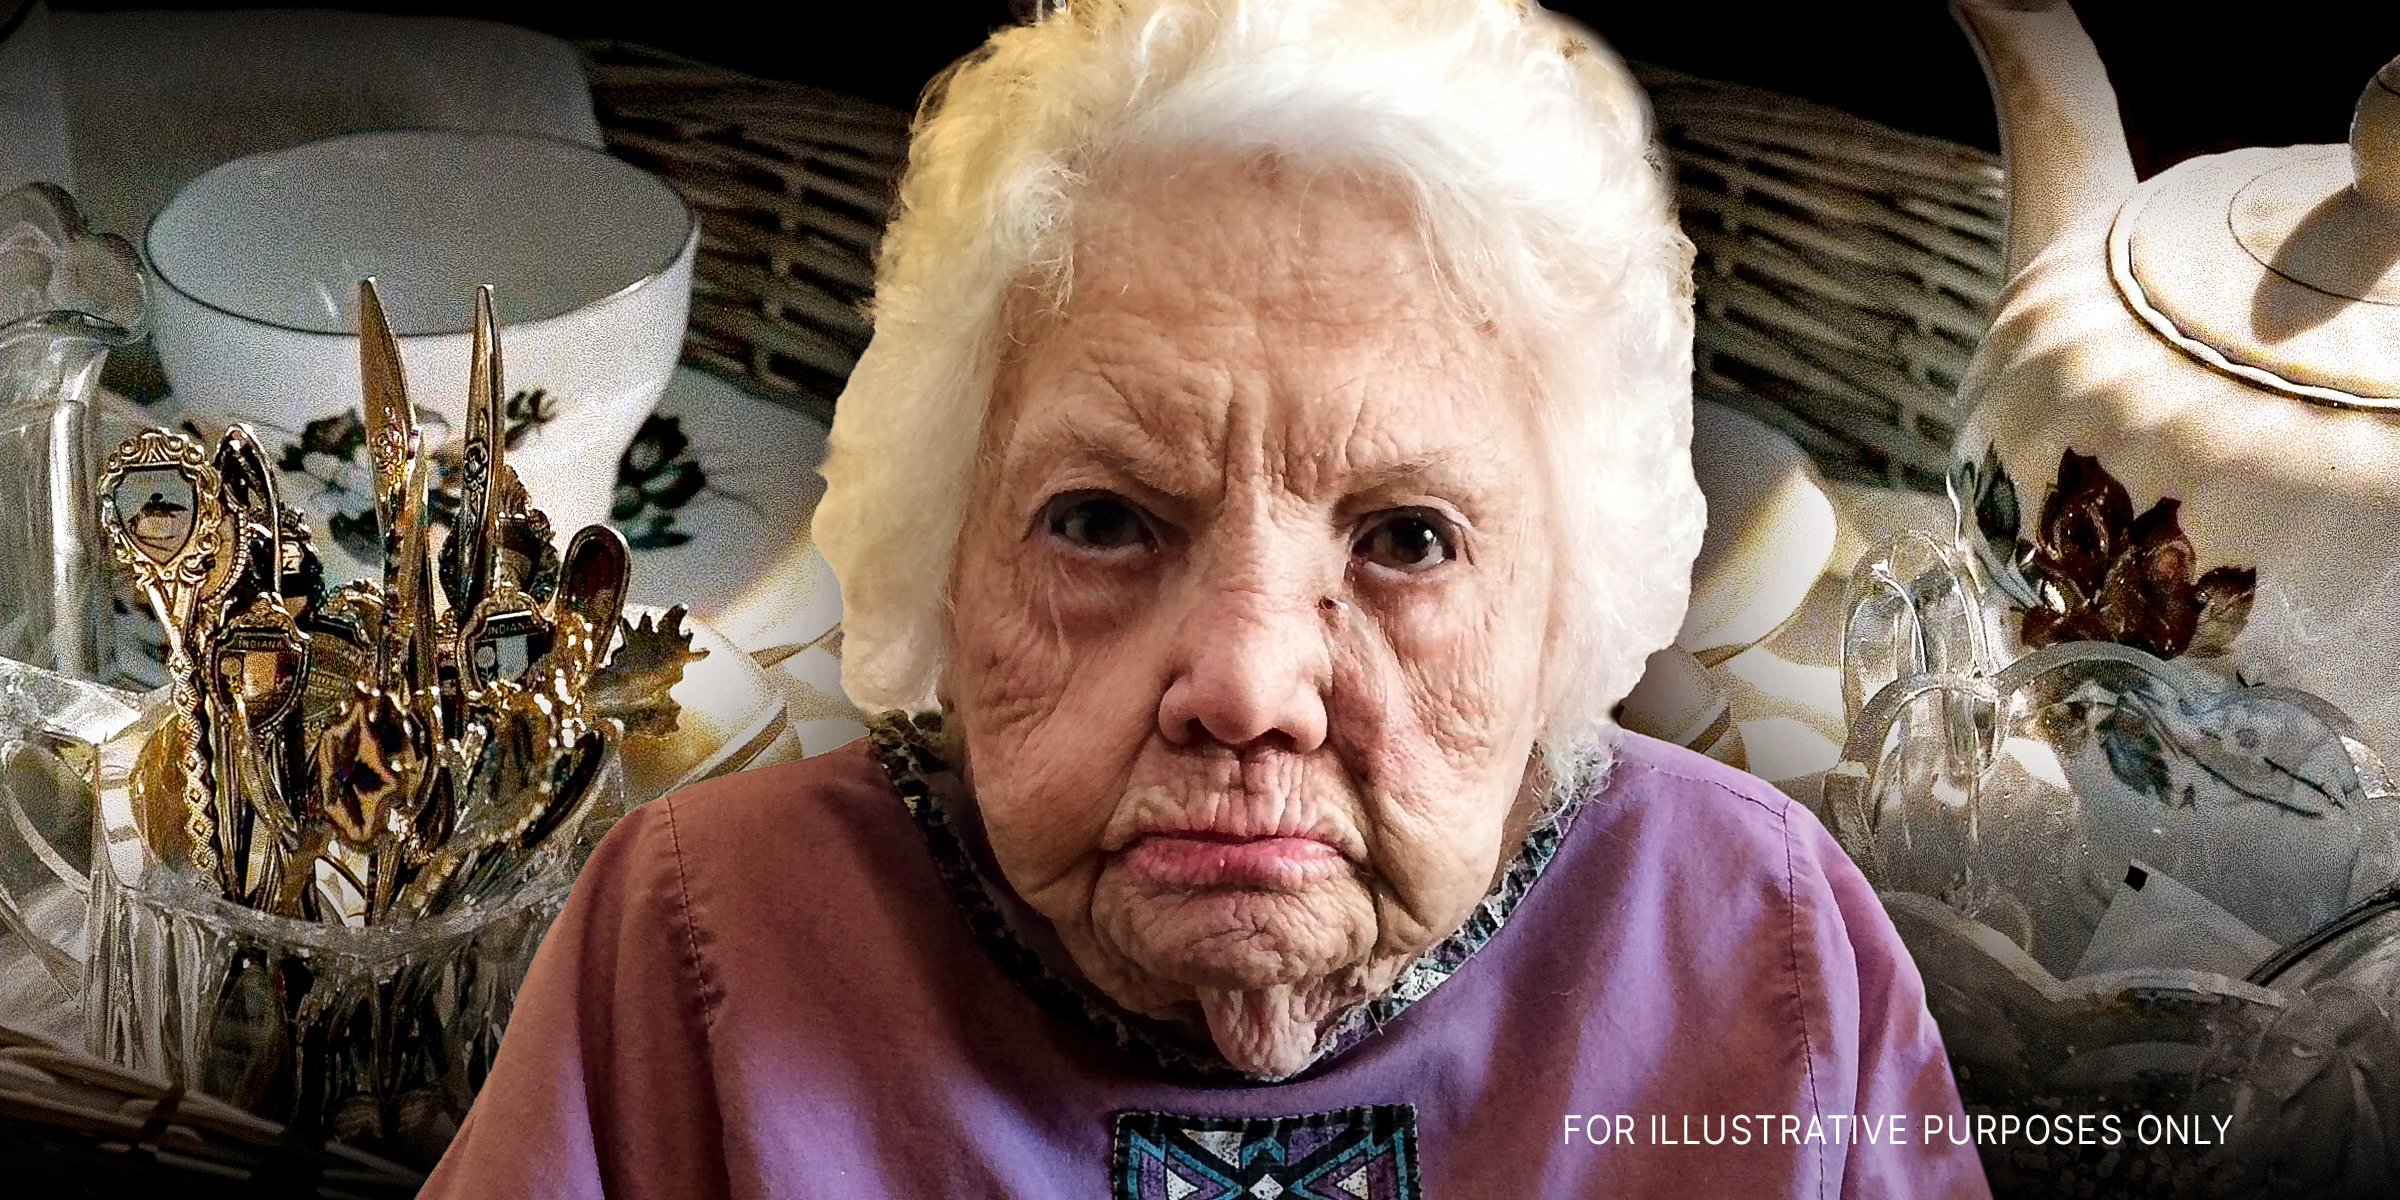 Eine wütende ältere Frau | Quelle: Flickr